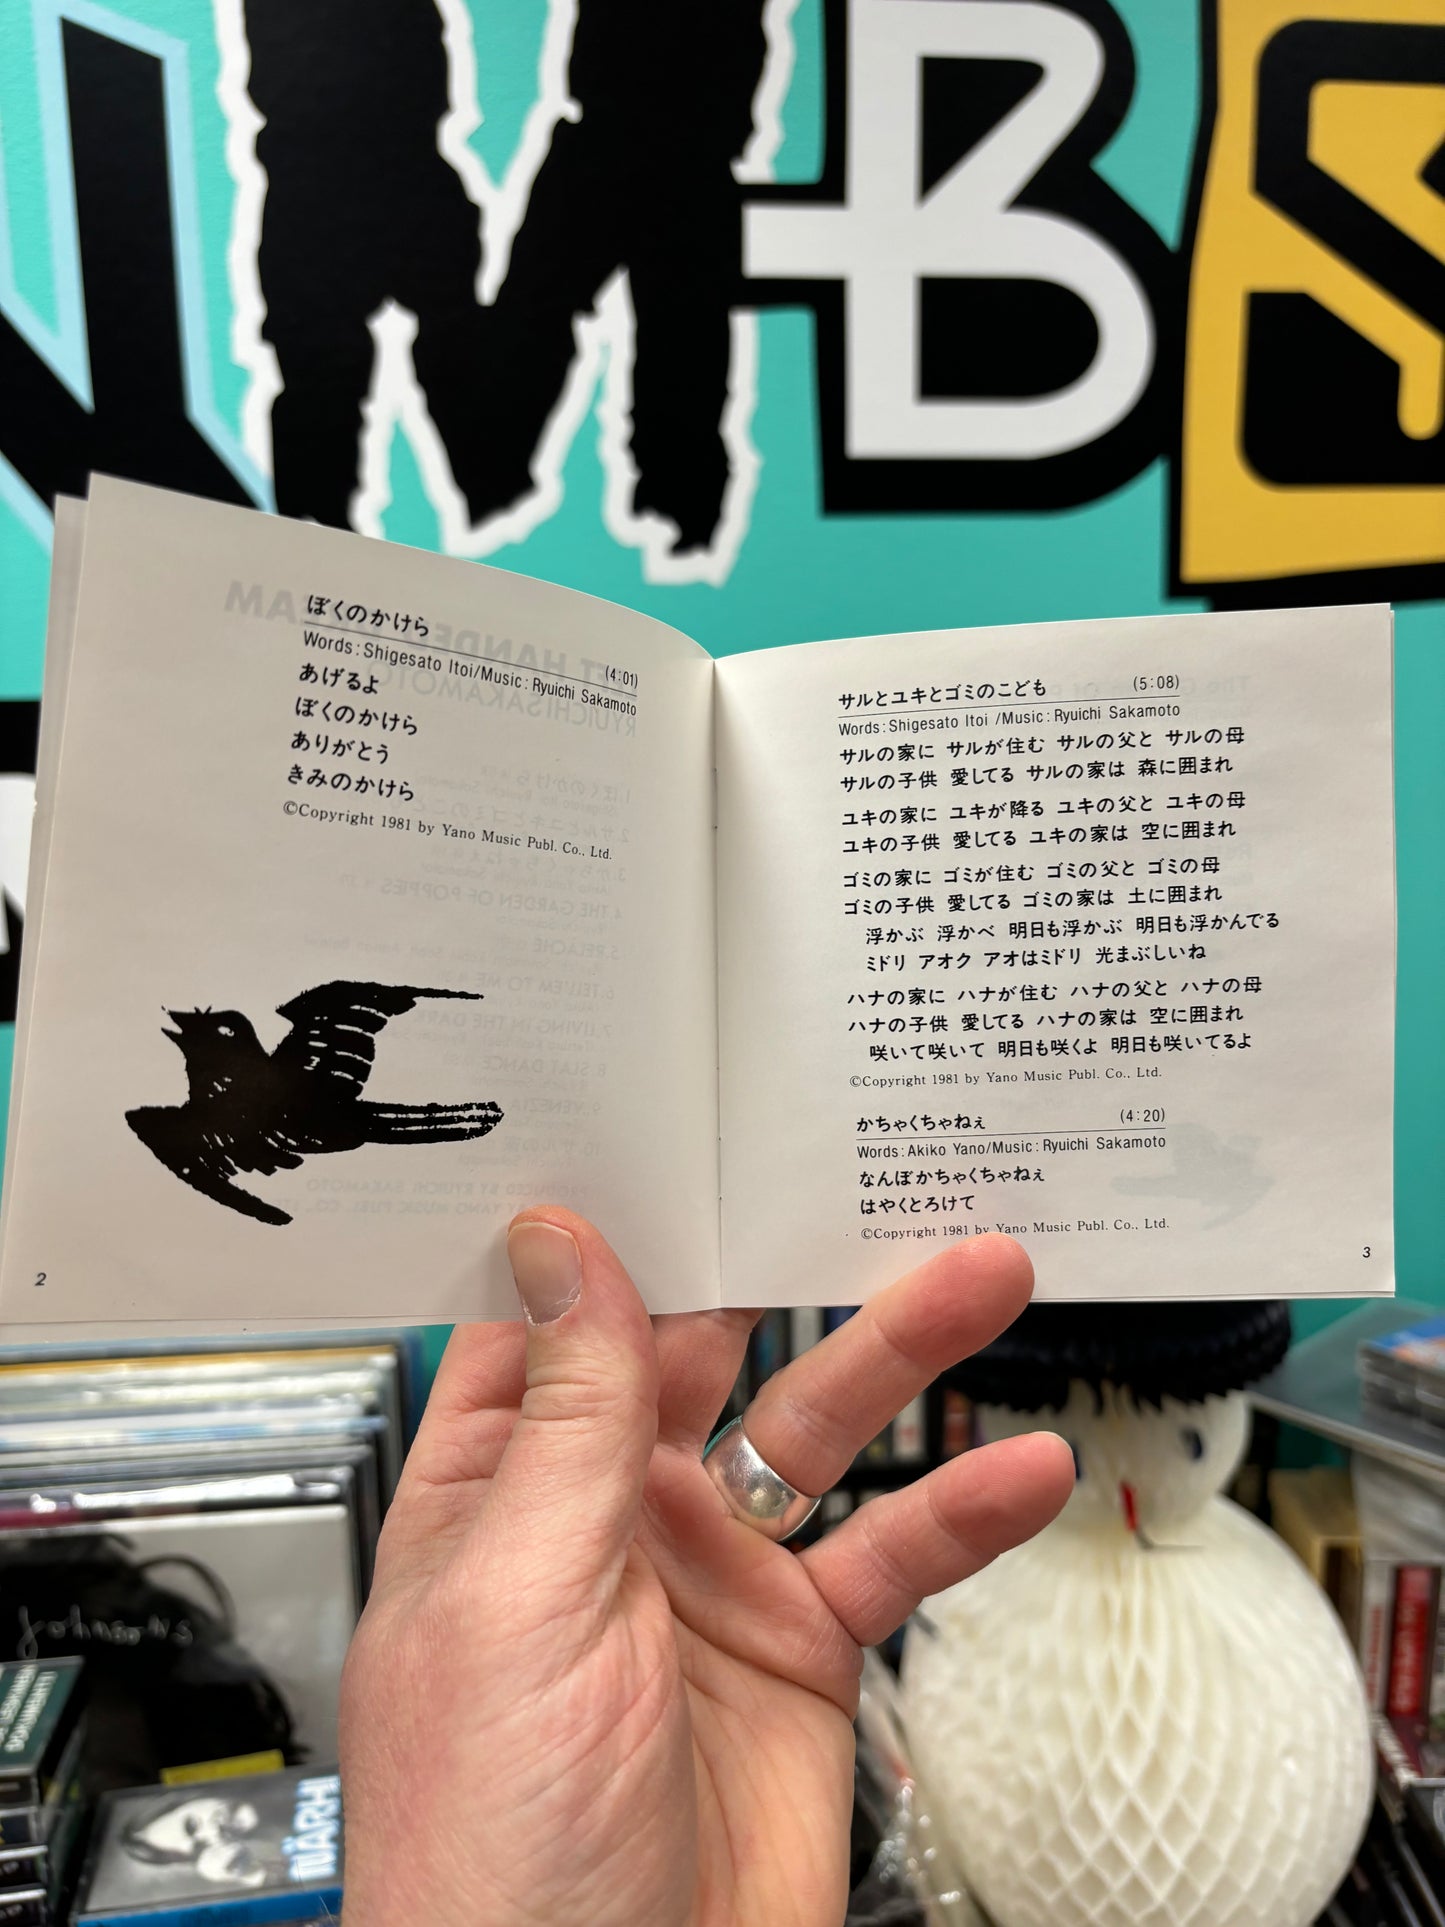 Ryuichi Sakamoto: Left Handed Dream, CD, Japan 1987